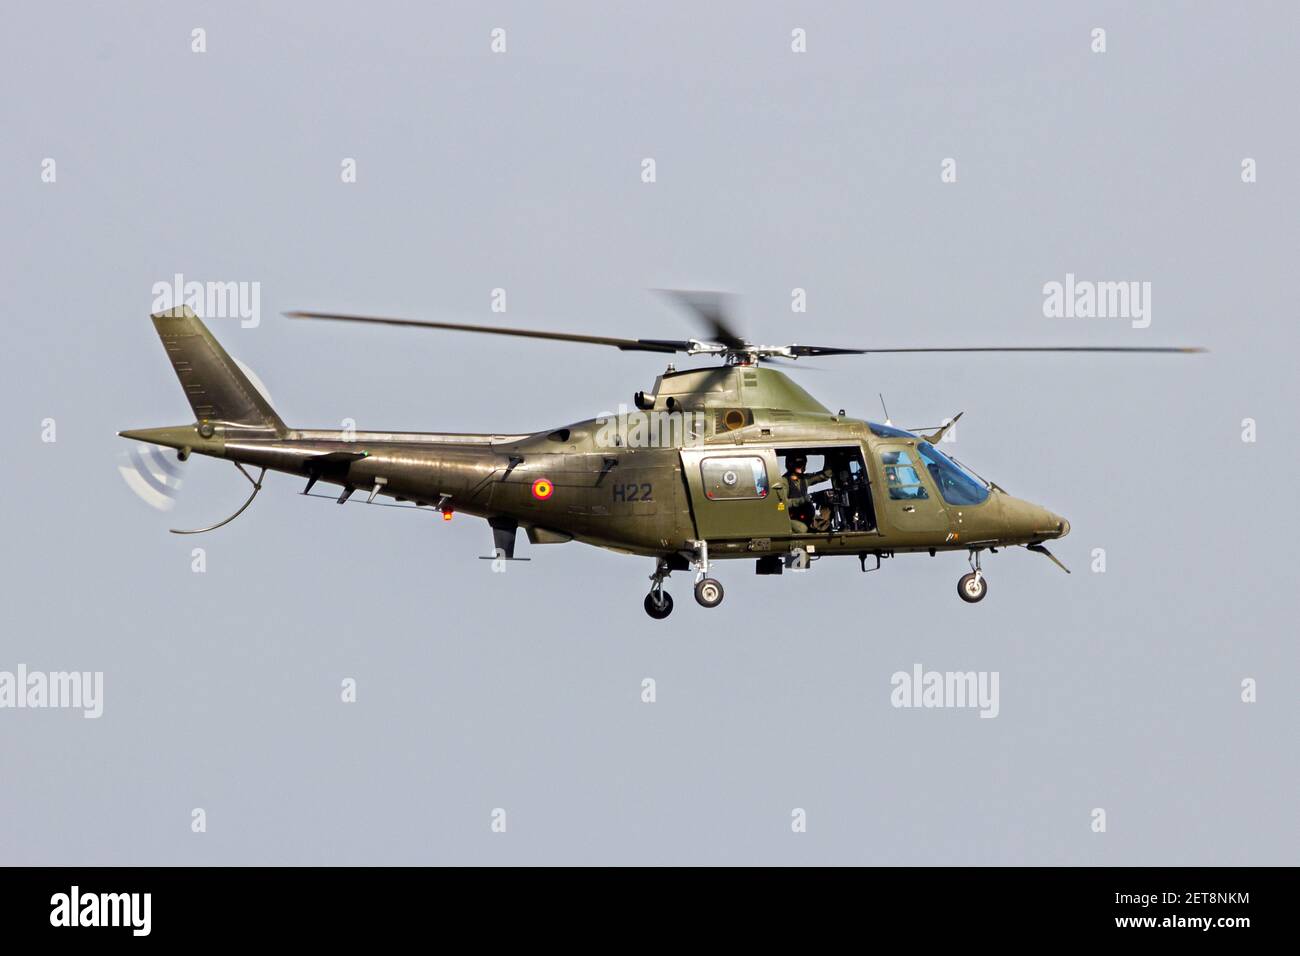 Hélicoptère A109 de la Force aérienne belge Agusta avec porte-arme en vol au-dessus de la base aérienne de Kleine Brogel. Belgique - 13 septembre 2014 Banque D'Images